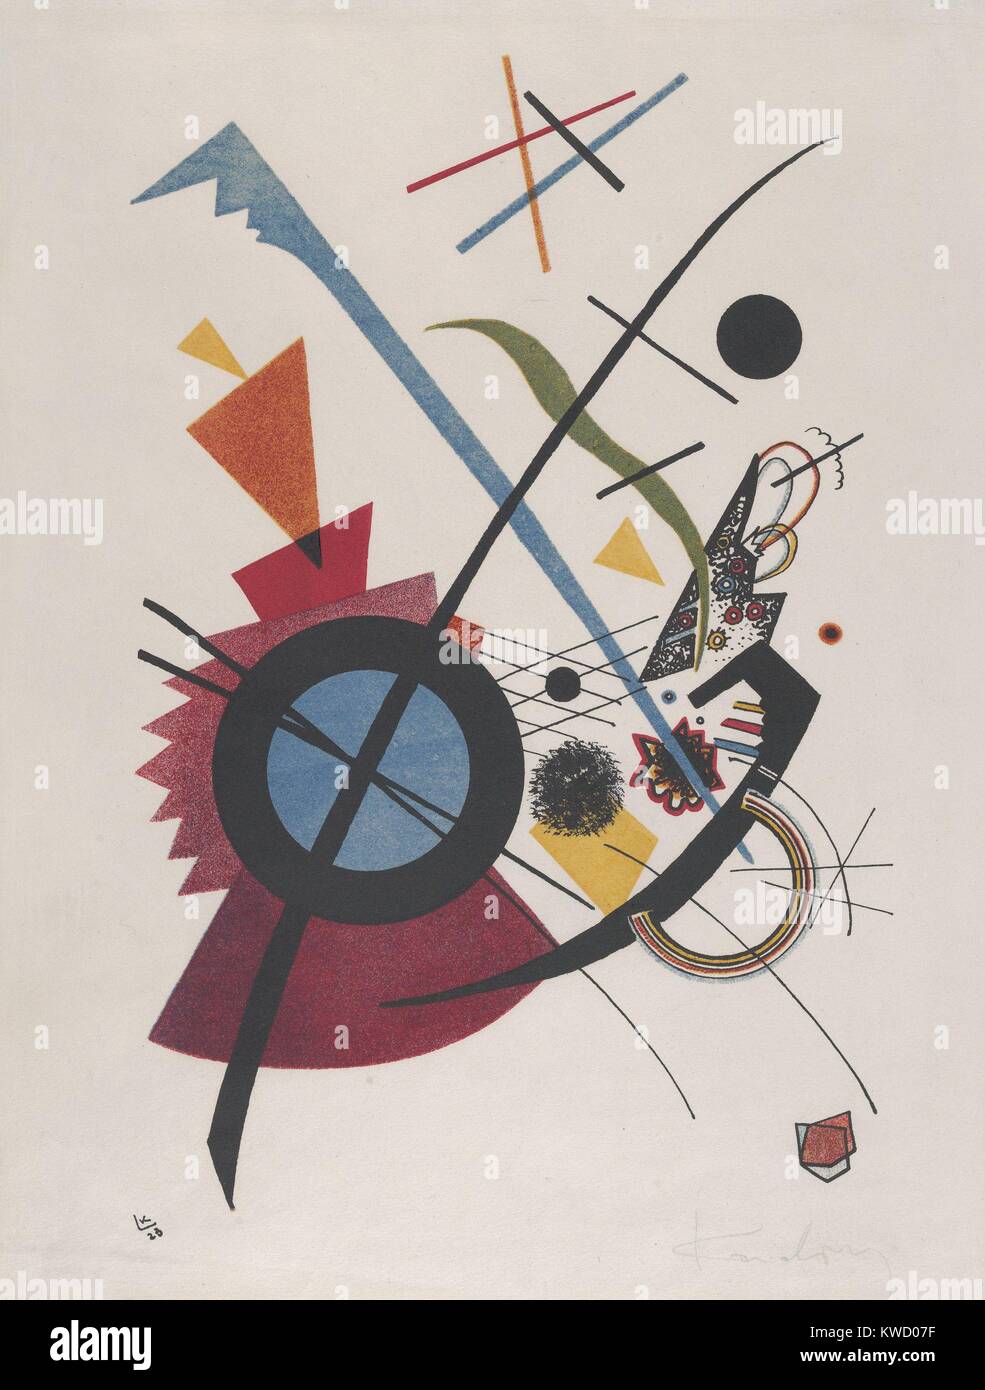 Violett, par Wassily Kandinsky, 1923, Russe, Français Imprimer expressionniste lithographie. Les éléments géométriques, cercles, arcs, triangles, lignes droites et courbes, mélanger avec des formes à la main dans ce BSLOC résumé lithographie (2017 5 148) Banque D'Images